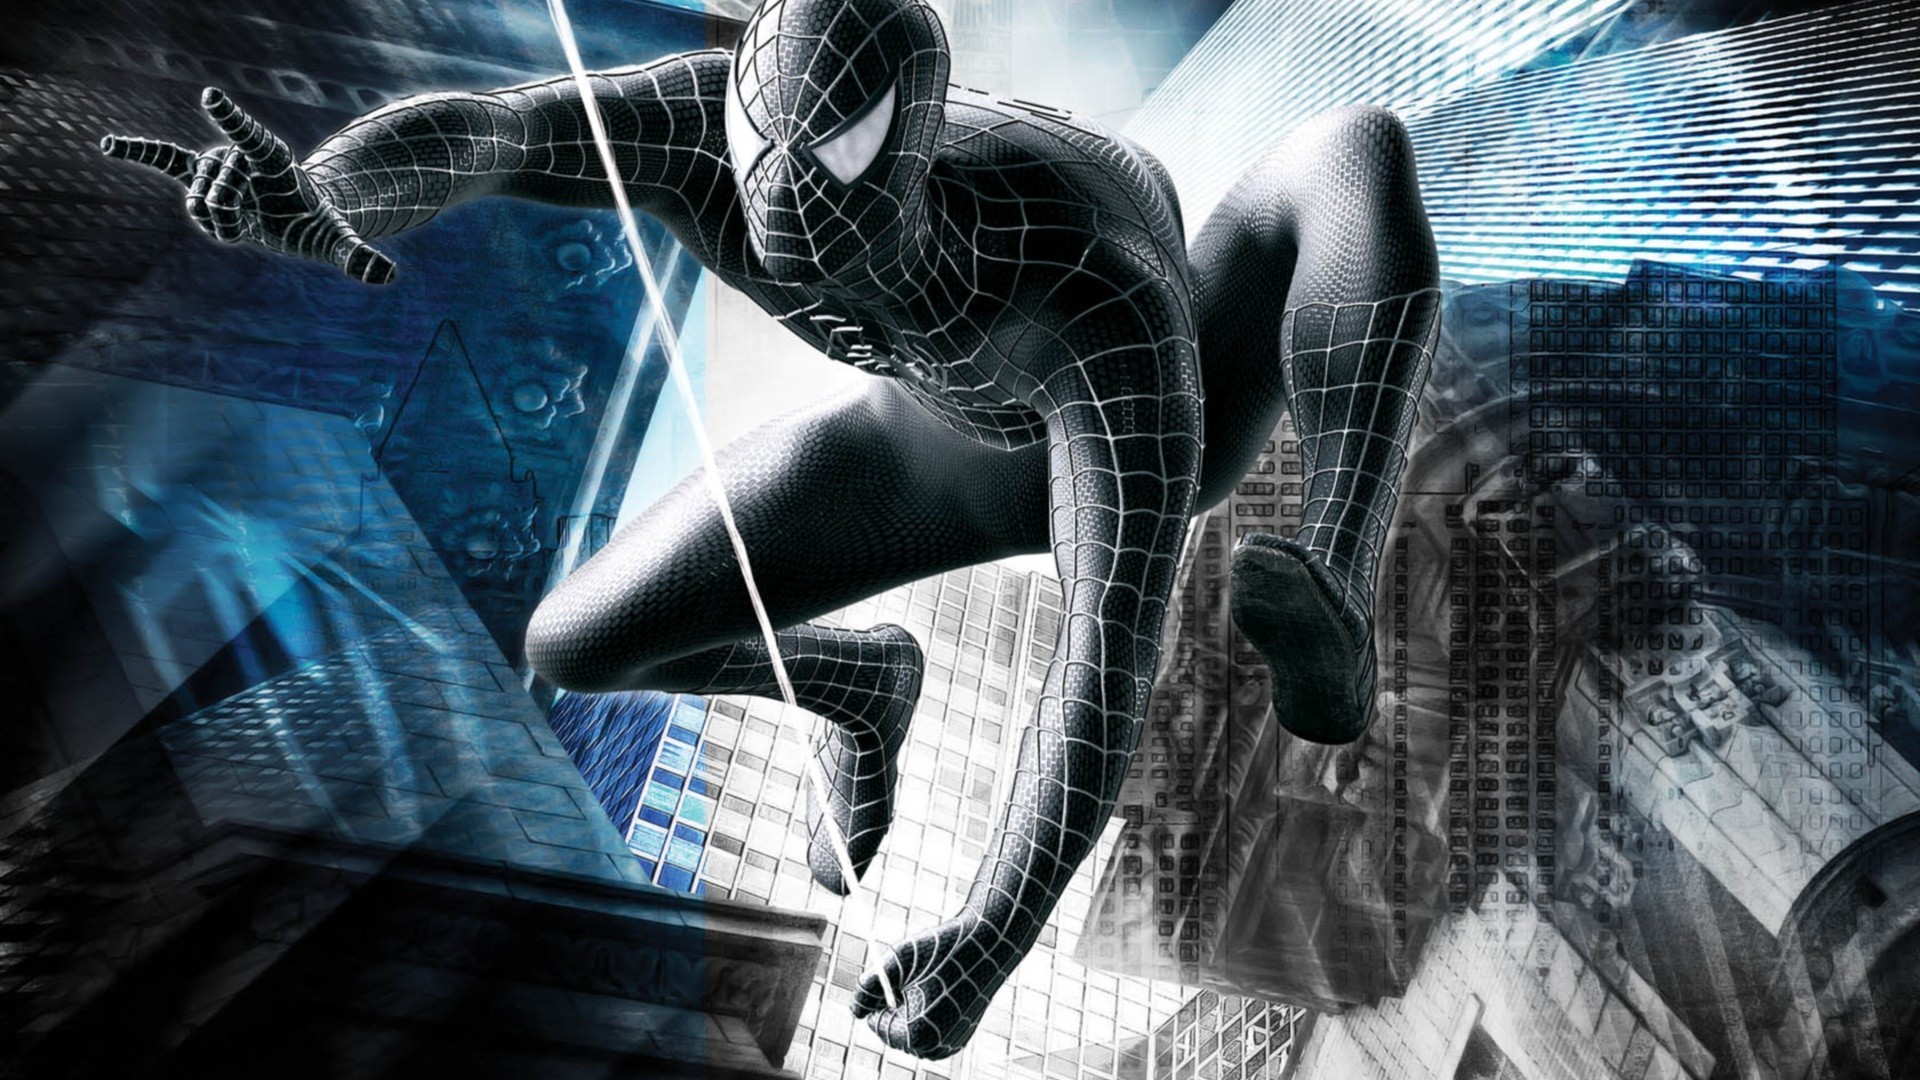 spider man 3 fond d'écran hd,homme araignée,oeuvre de cg,personnage fictif,conception graphique,conception